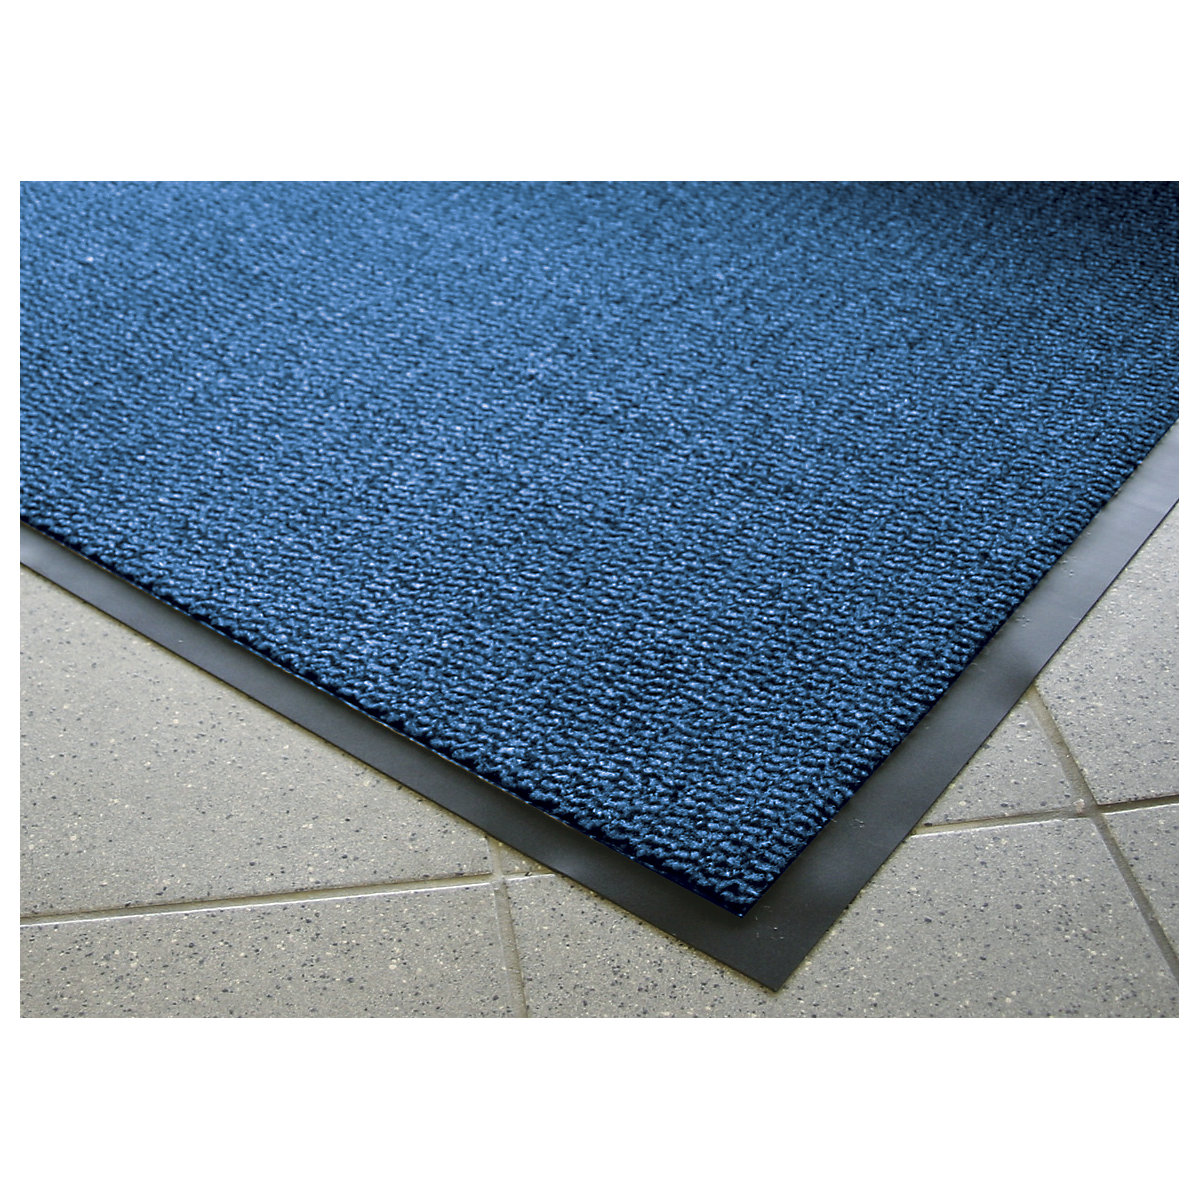 Entrance matting for indoor use, polypropylene pile – COBA, LxW 900 x 600 mm, pack of 2, black / blue-10